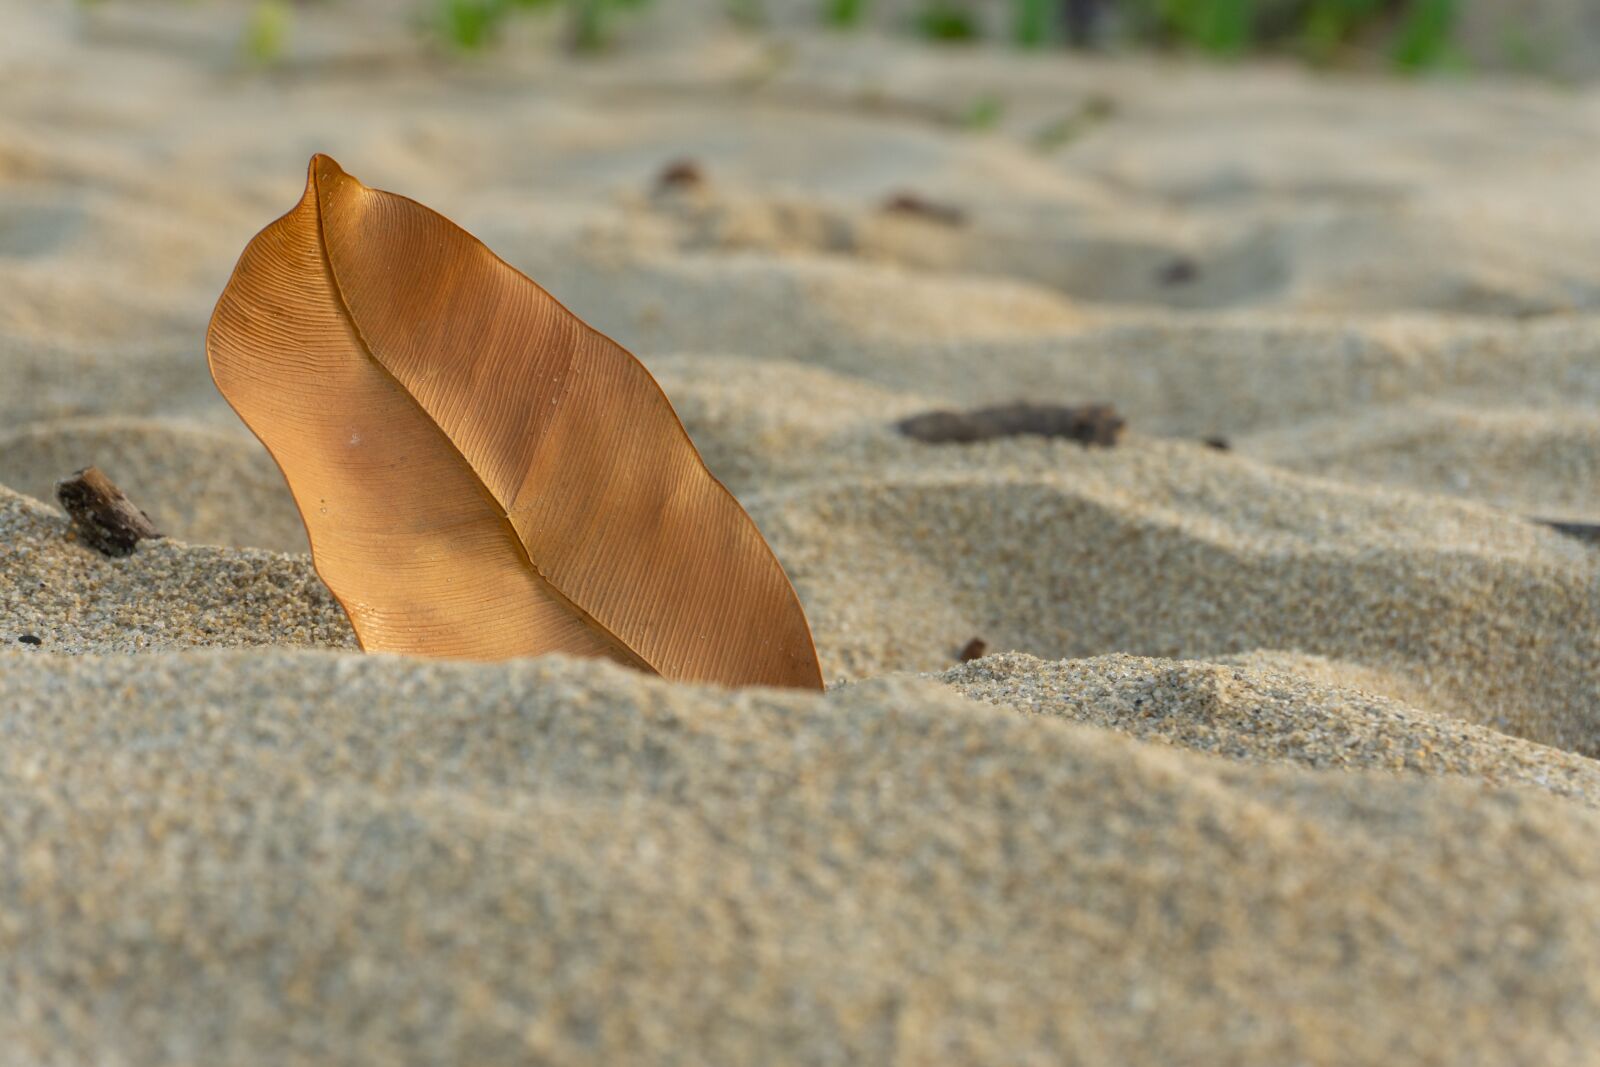 Sony a6000 sample photo. Leaf, sand, beach photography